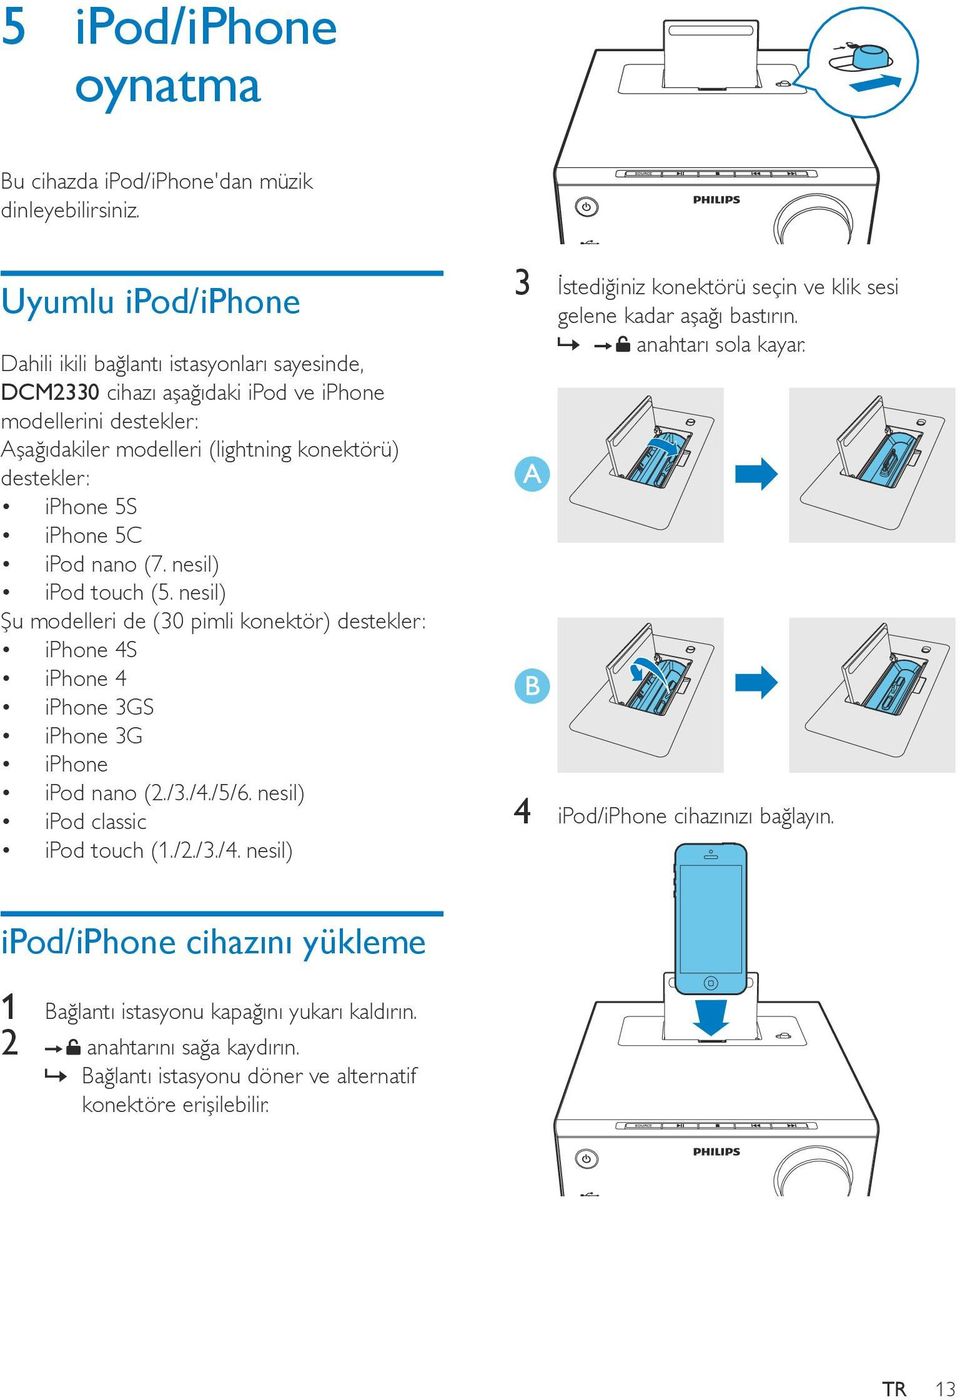 iphone 5C ipod nano (7. nesil) ipod touch (5. nesil) Şu modelleri de (30 pimli konektör) destekler: iphone 4S iphone 4 iphone 3GS iphone 3G iphone ipod nano (2./3./4./5/6.